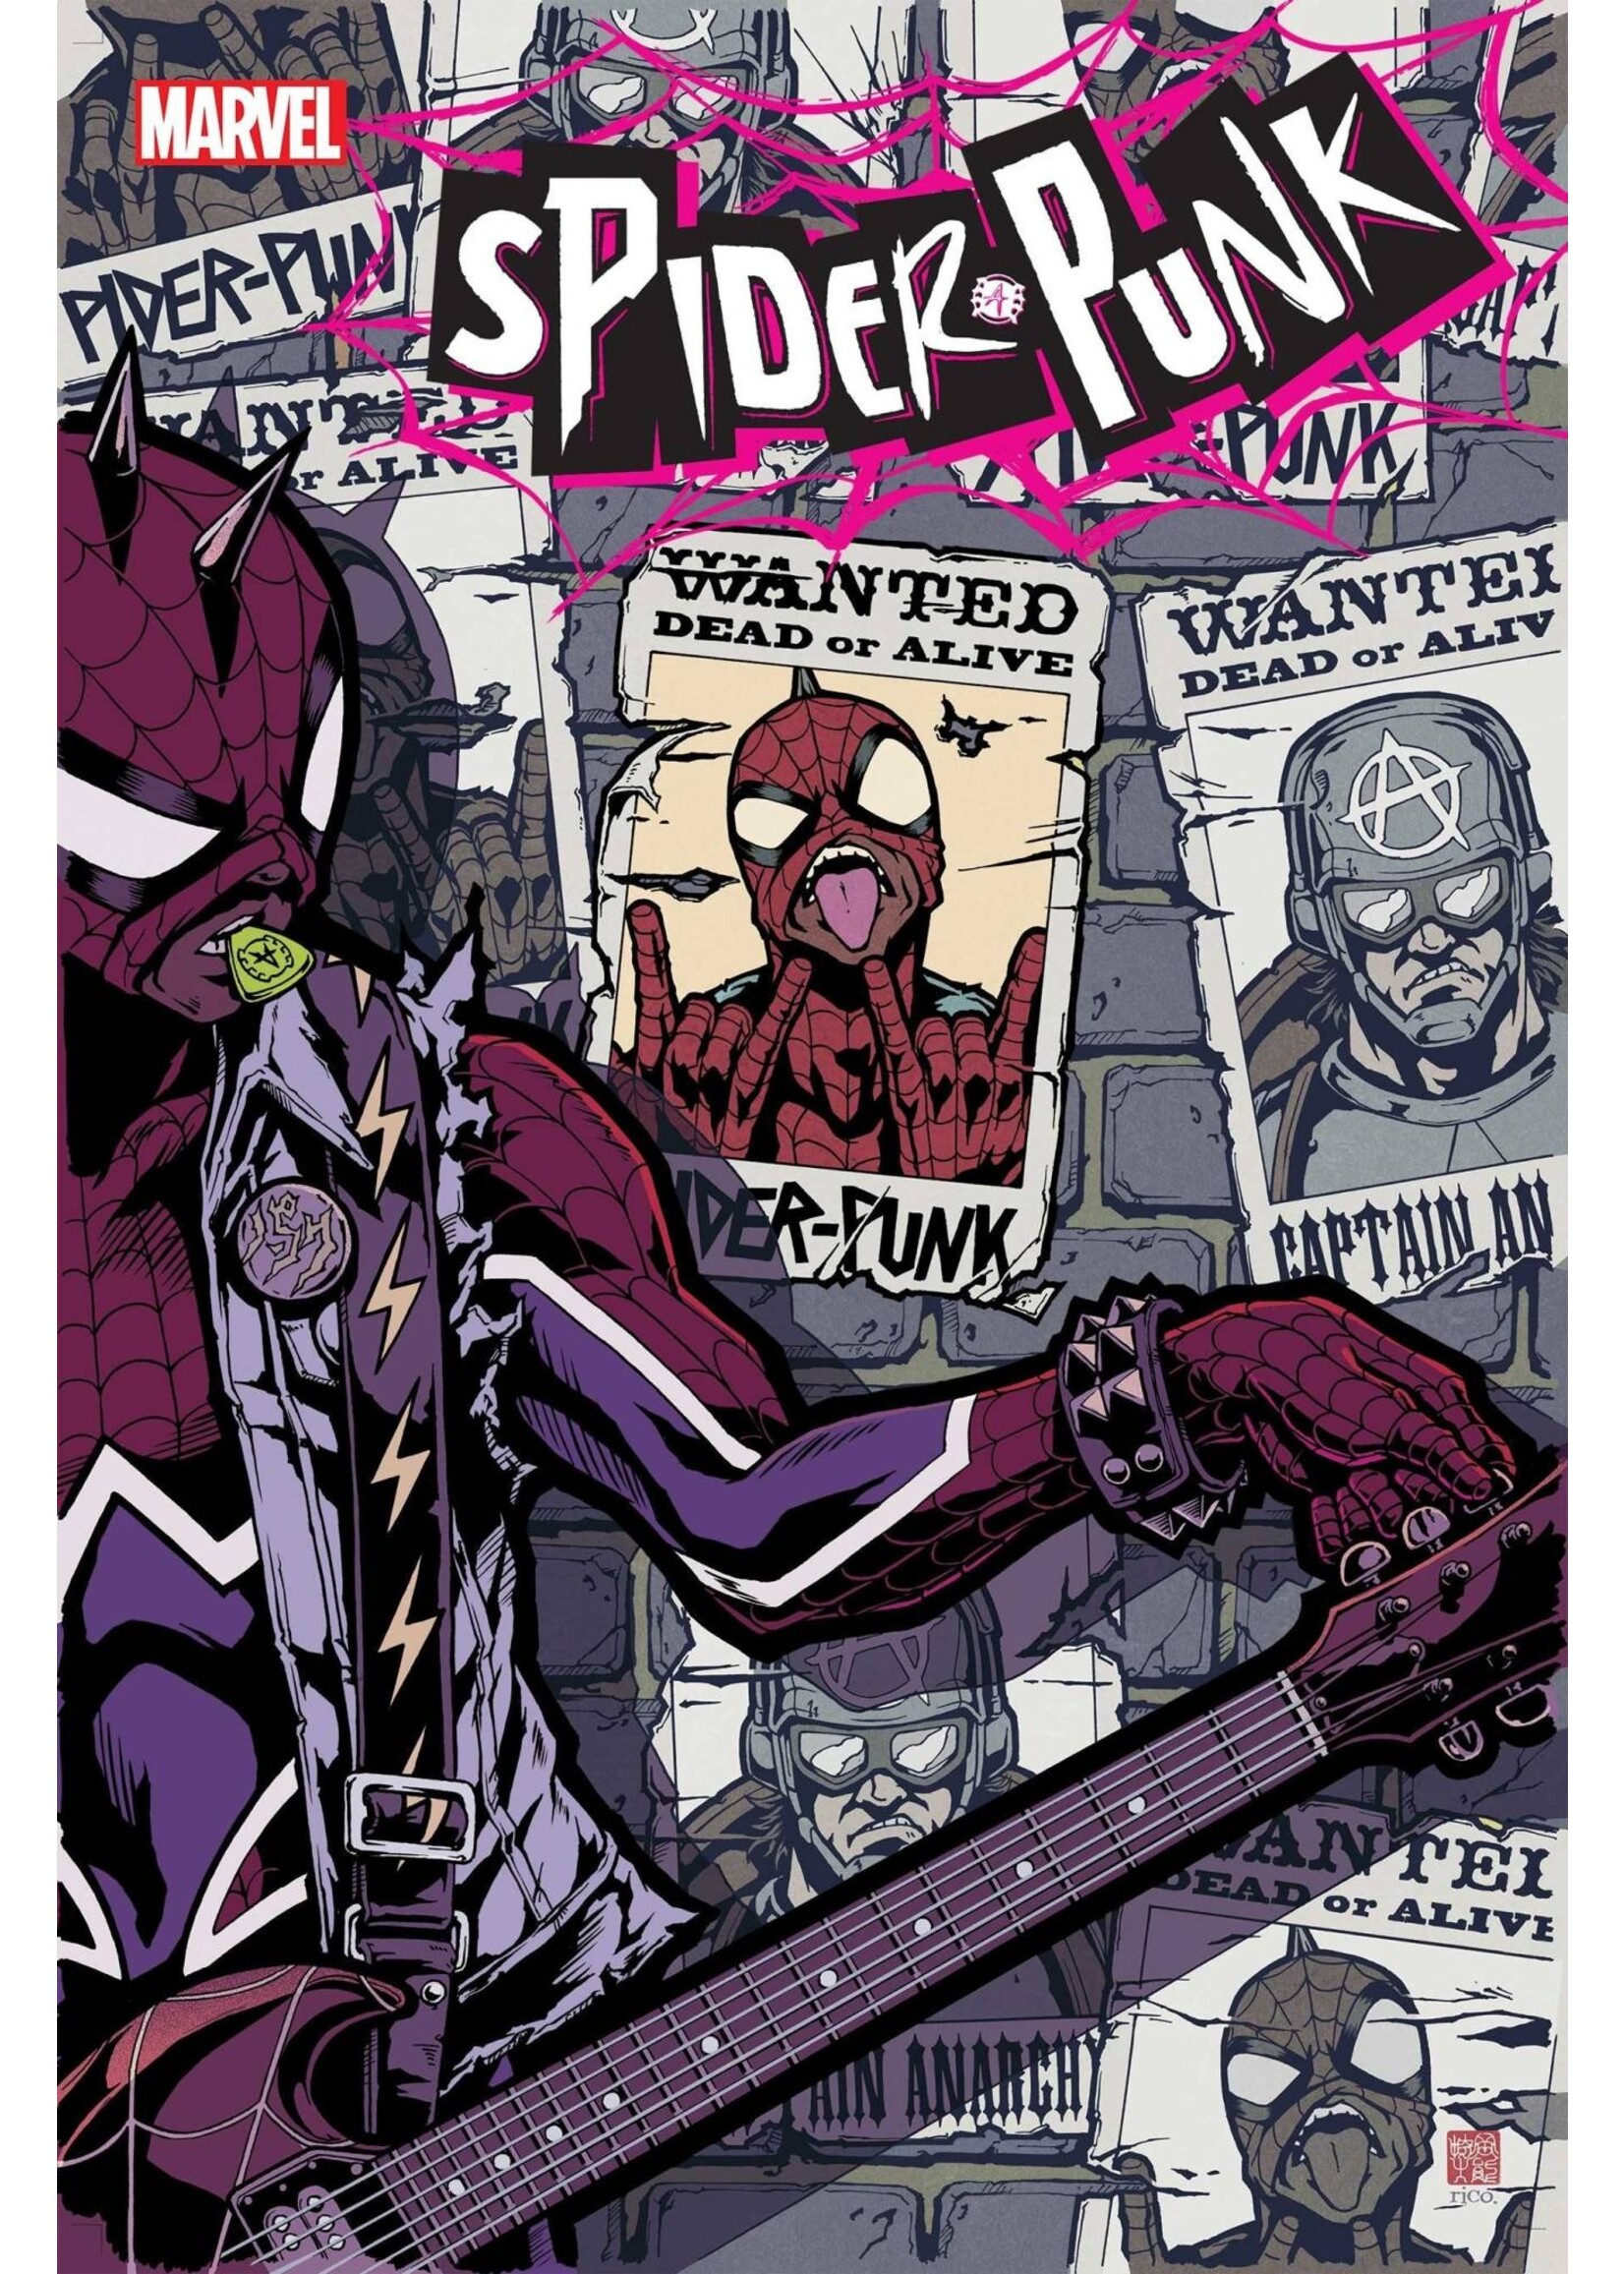 MARVEL COMICS SPIDER-PUNK #4